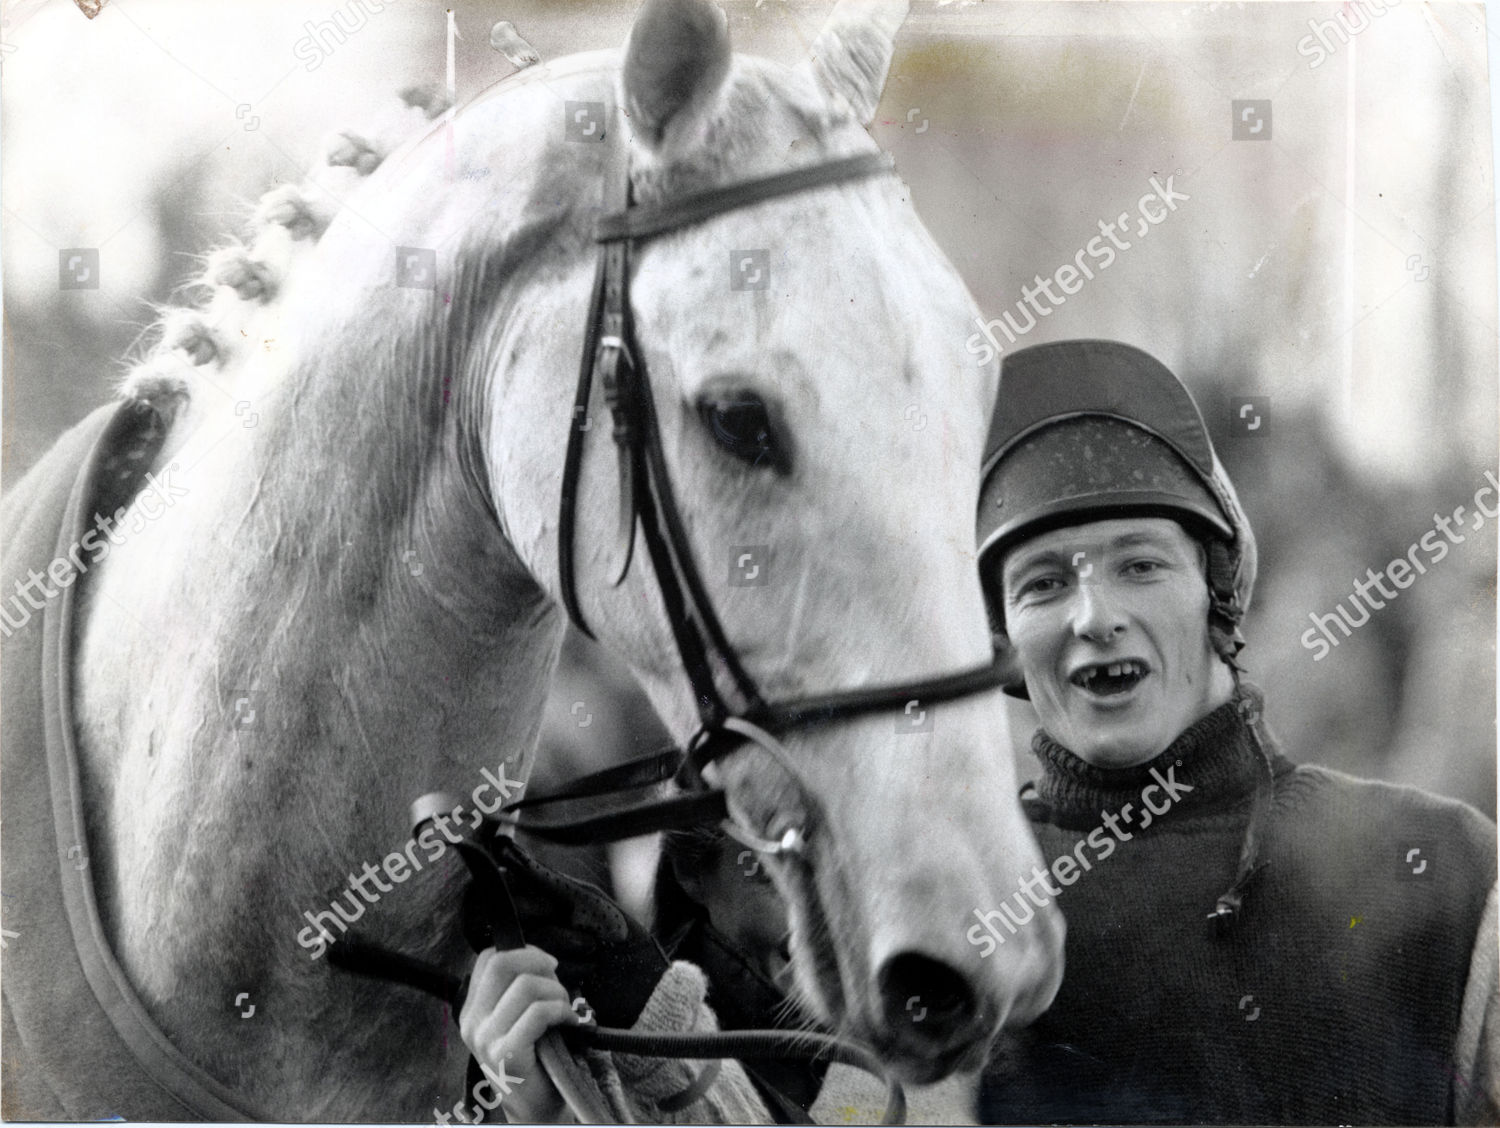 SIGNED RICHARD DUNWOODY ONE MAN KING GEORGE VI CHASE PHOTO COA HORSE RACING 